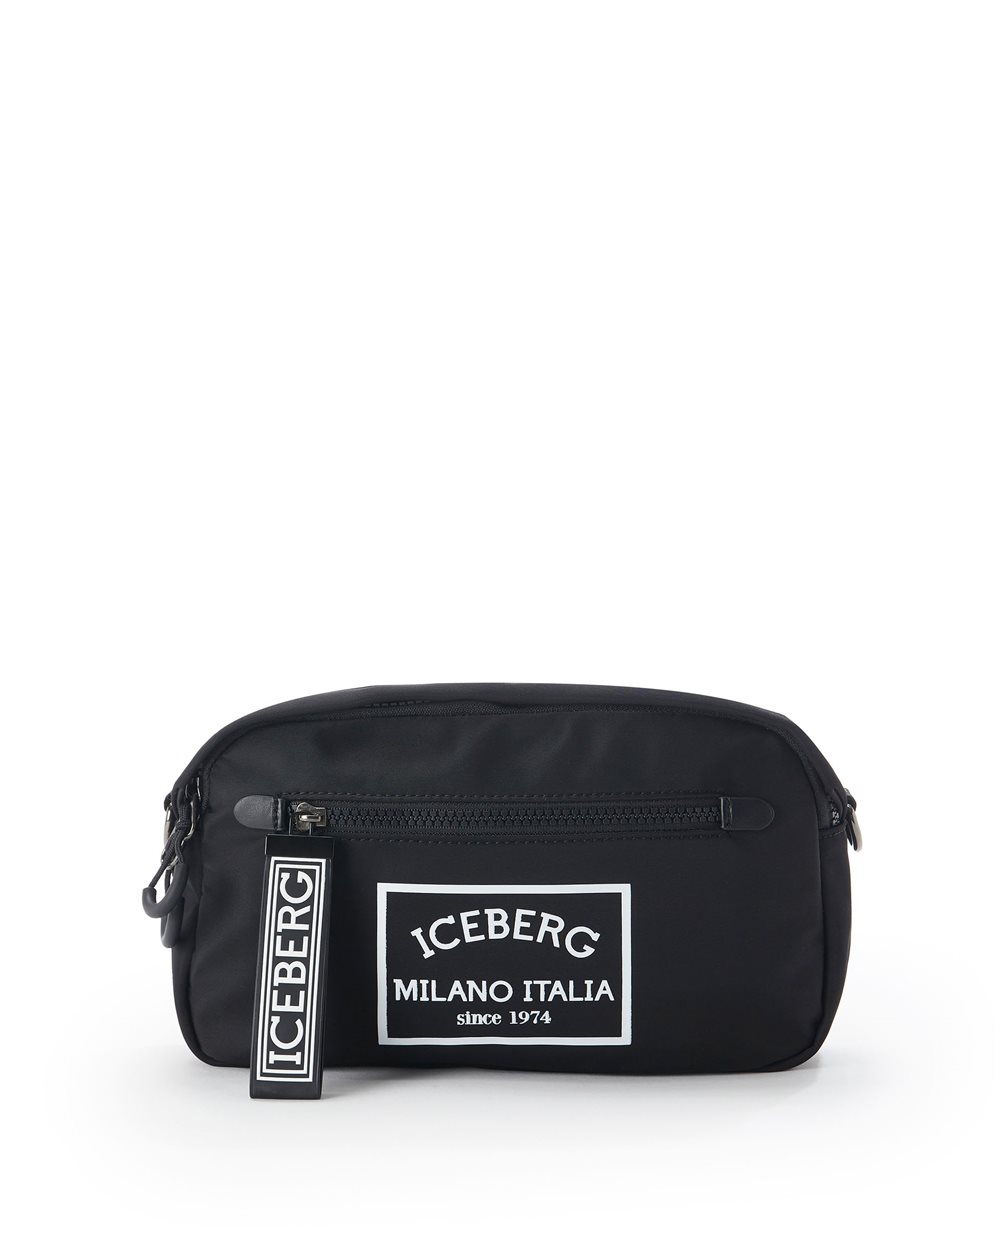 Shoulder bag - ( SECONDO STEP IT ) PROMO SALDI UP TO 50% | Iceberg - Official Website